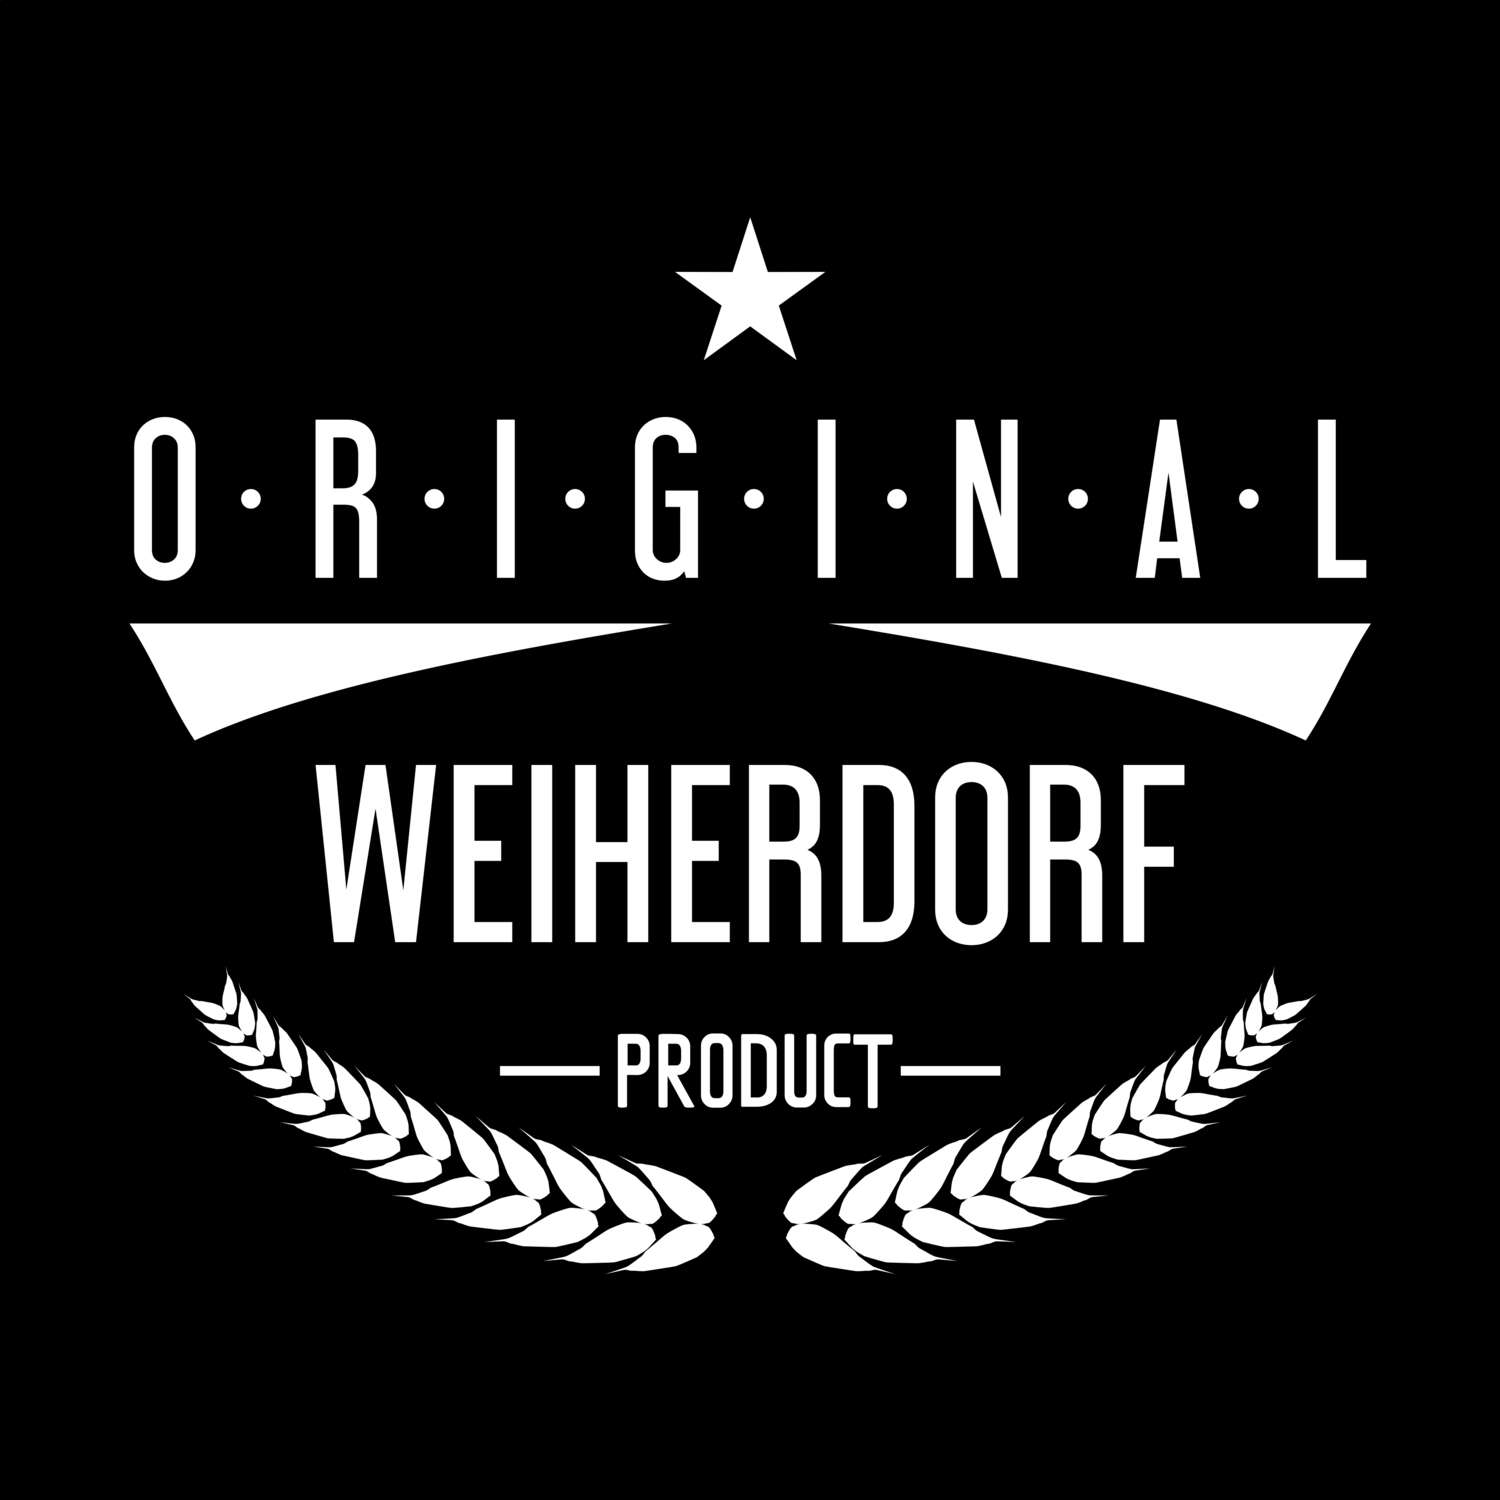 Weiherdorf T-Shirt »Original Product«